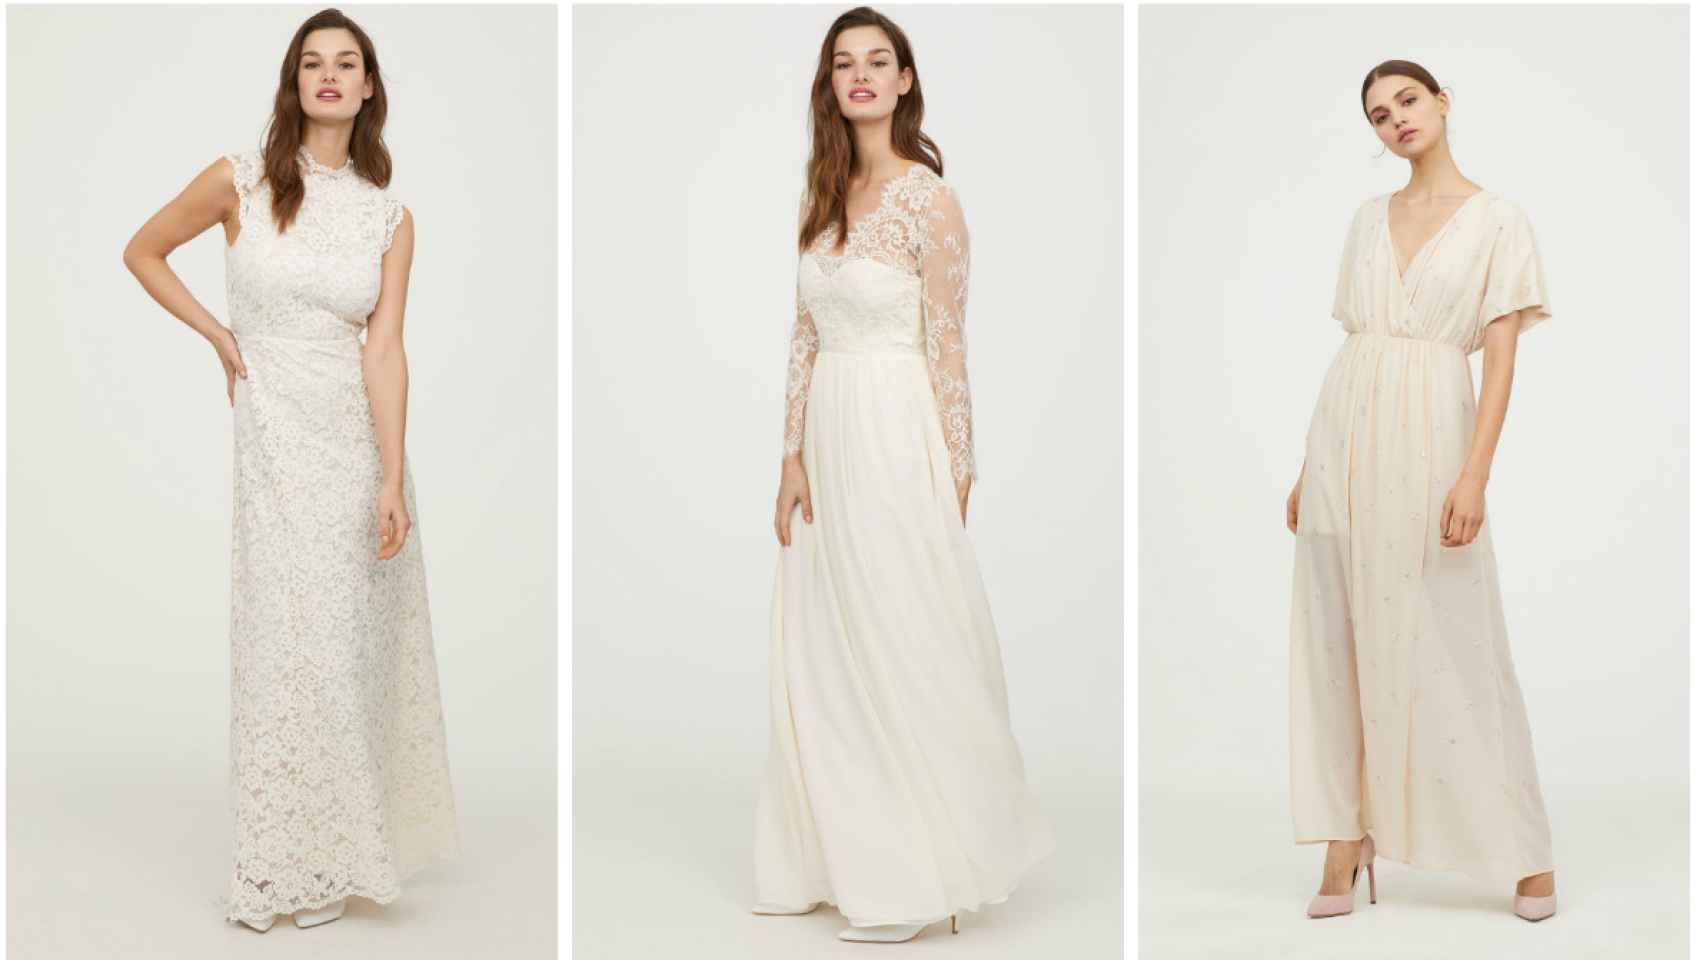 experimental Último grabadora H&M lanza una colección de vestidos de novia